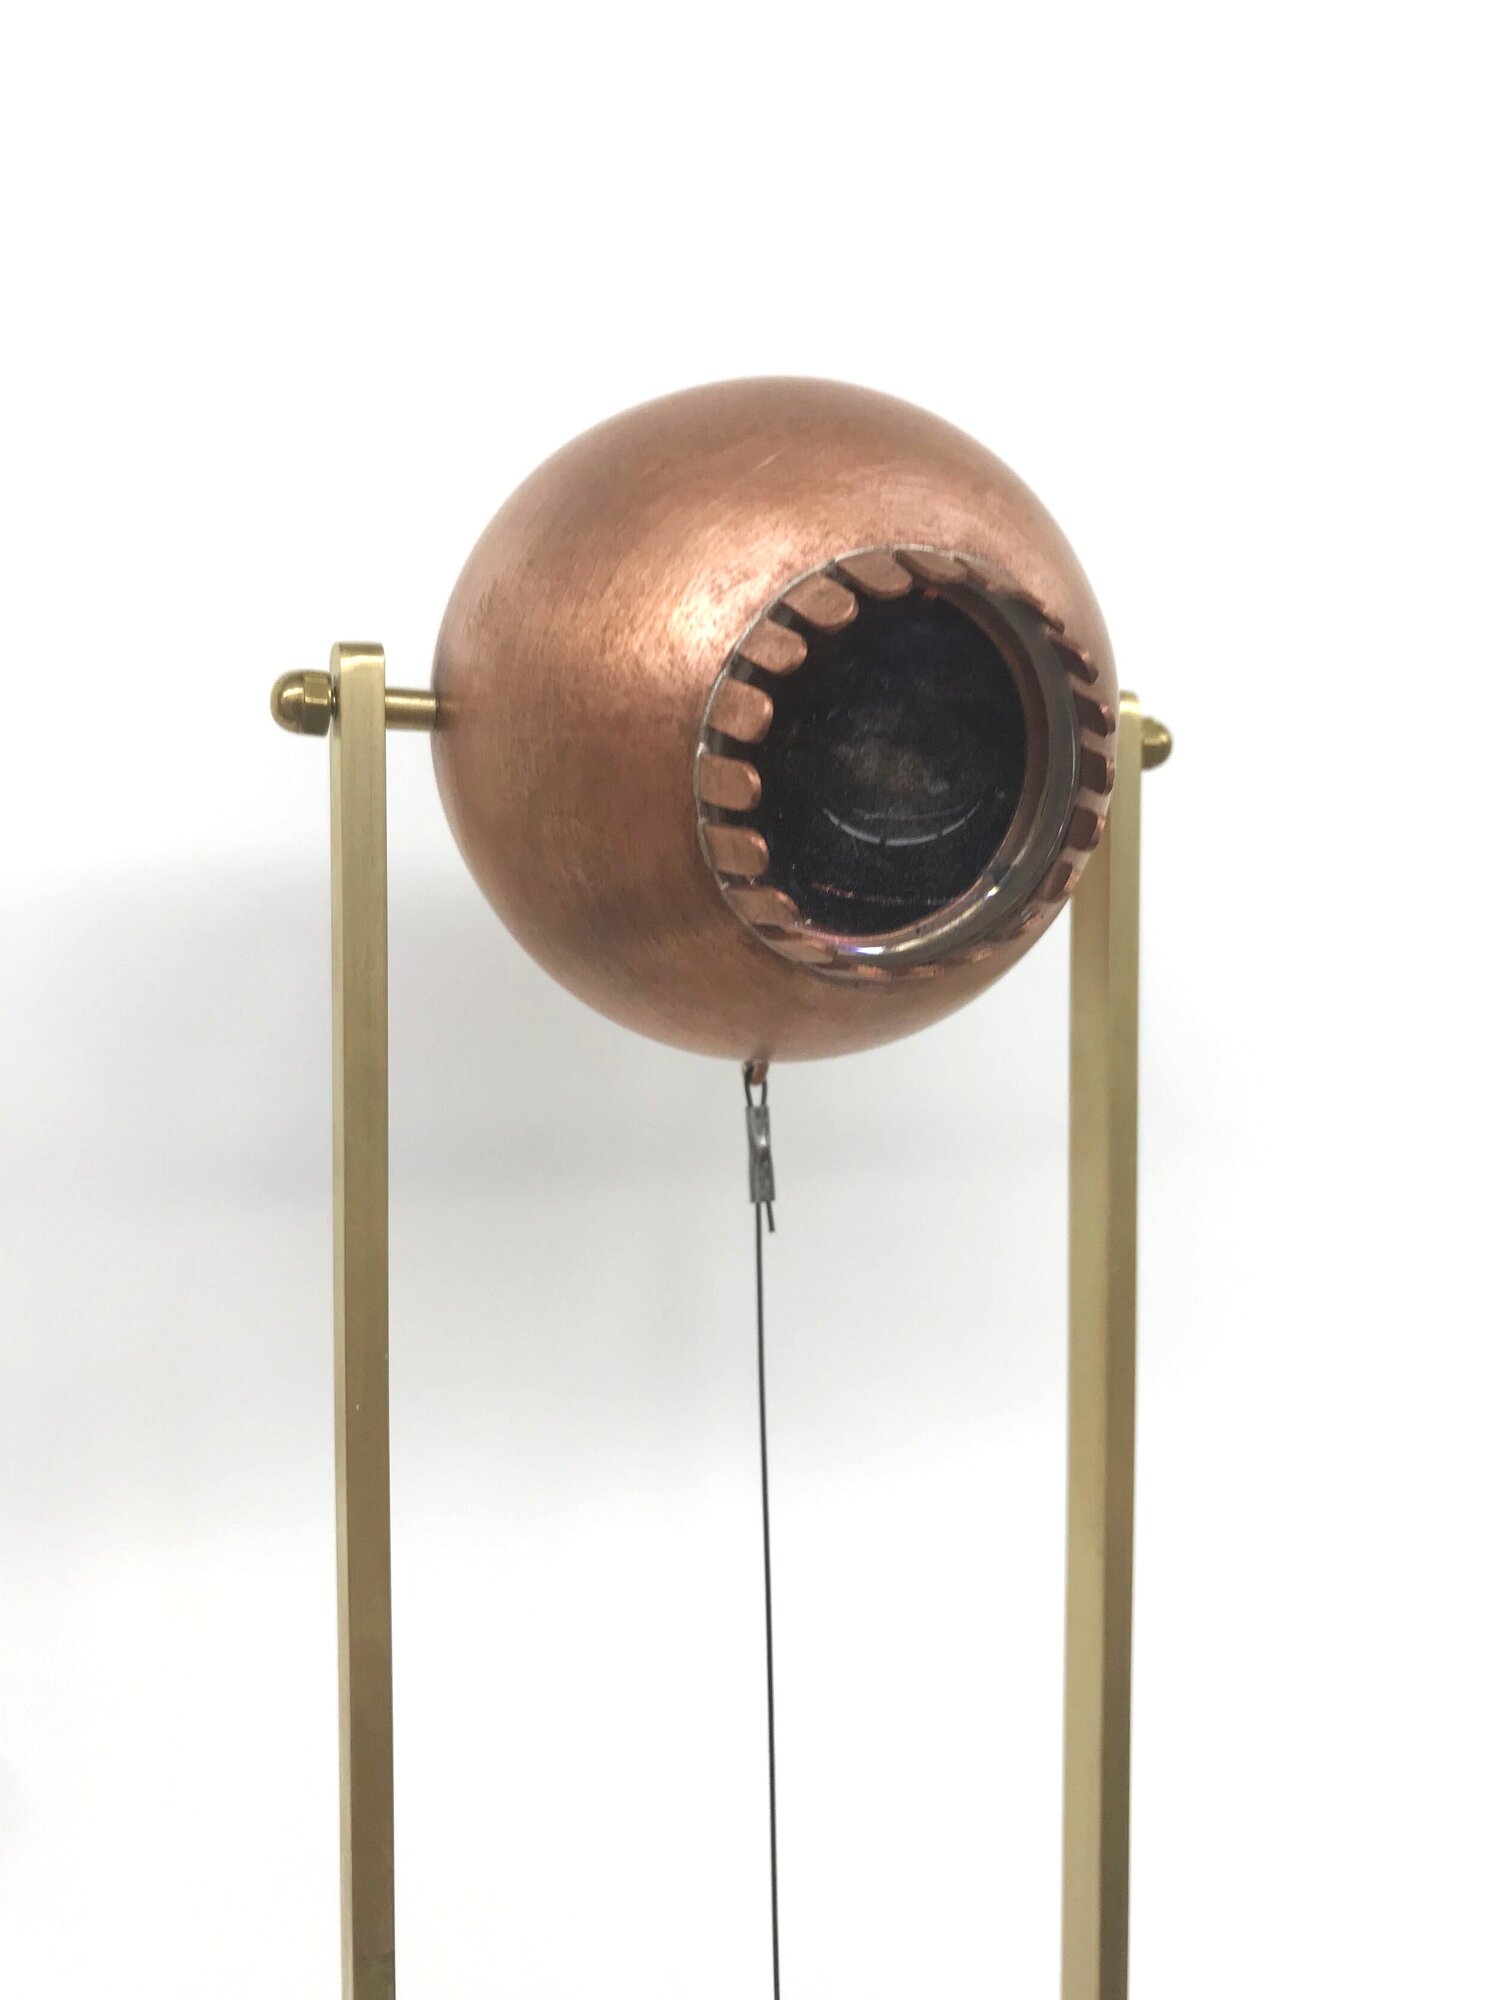 Endling detail, copper, brass, lens, electronics, sensor-Animatronic eyeball by Stacy Lynne Motte.